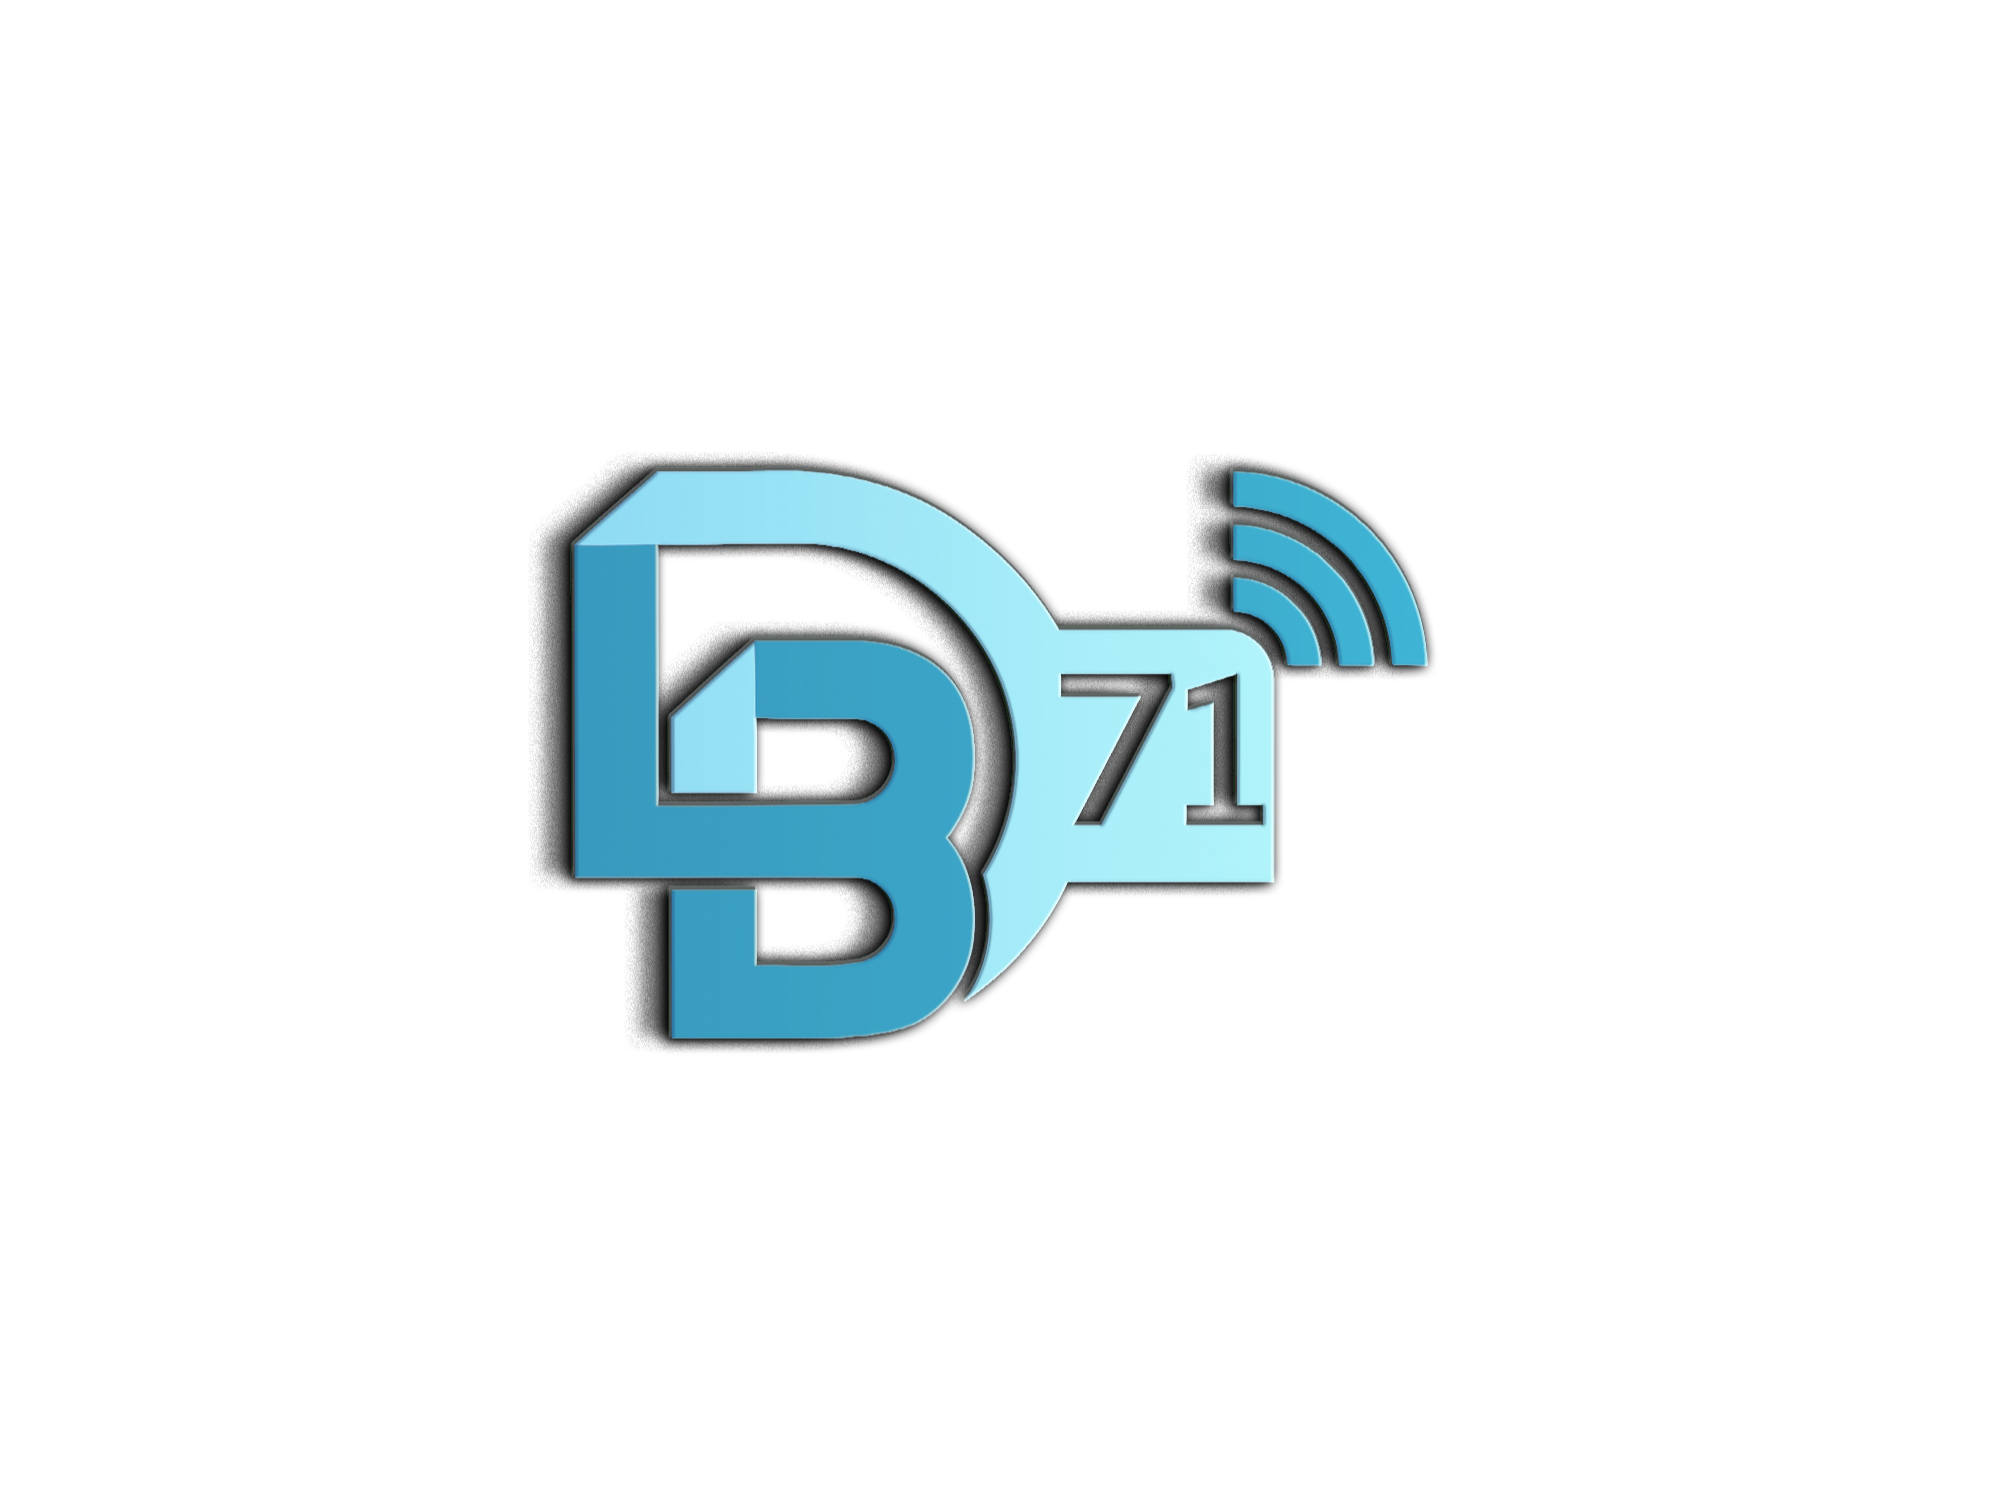 BD-71-logo